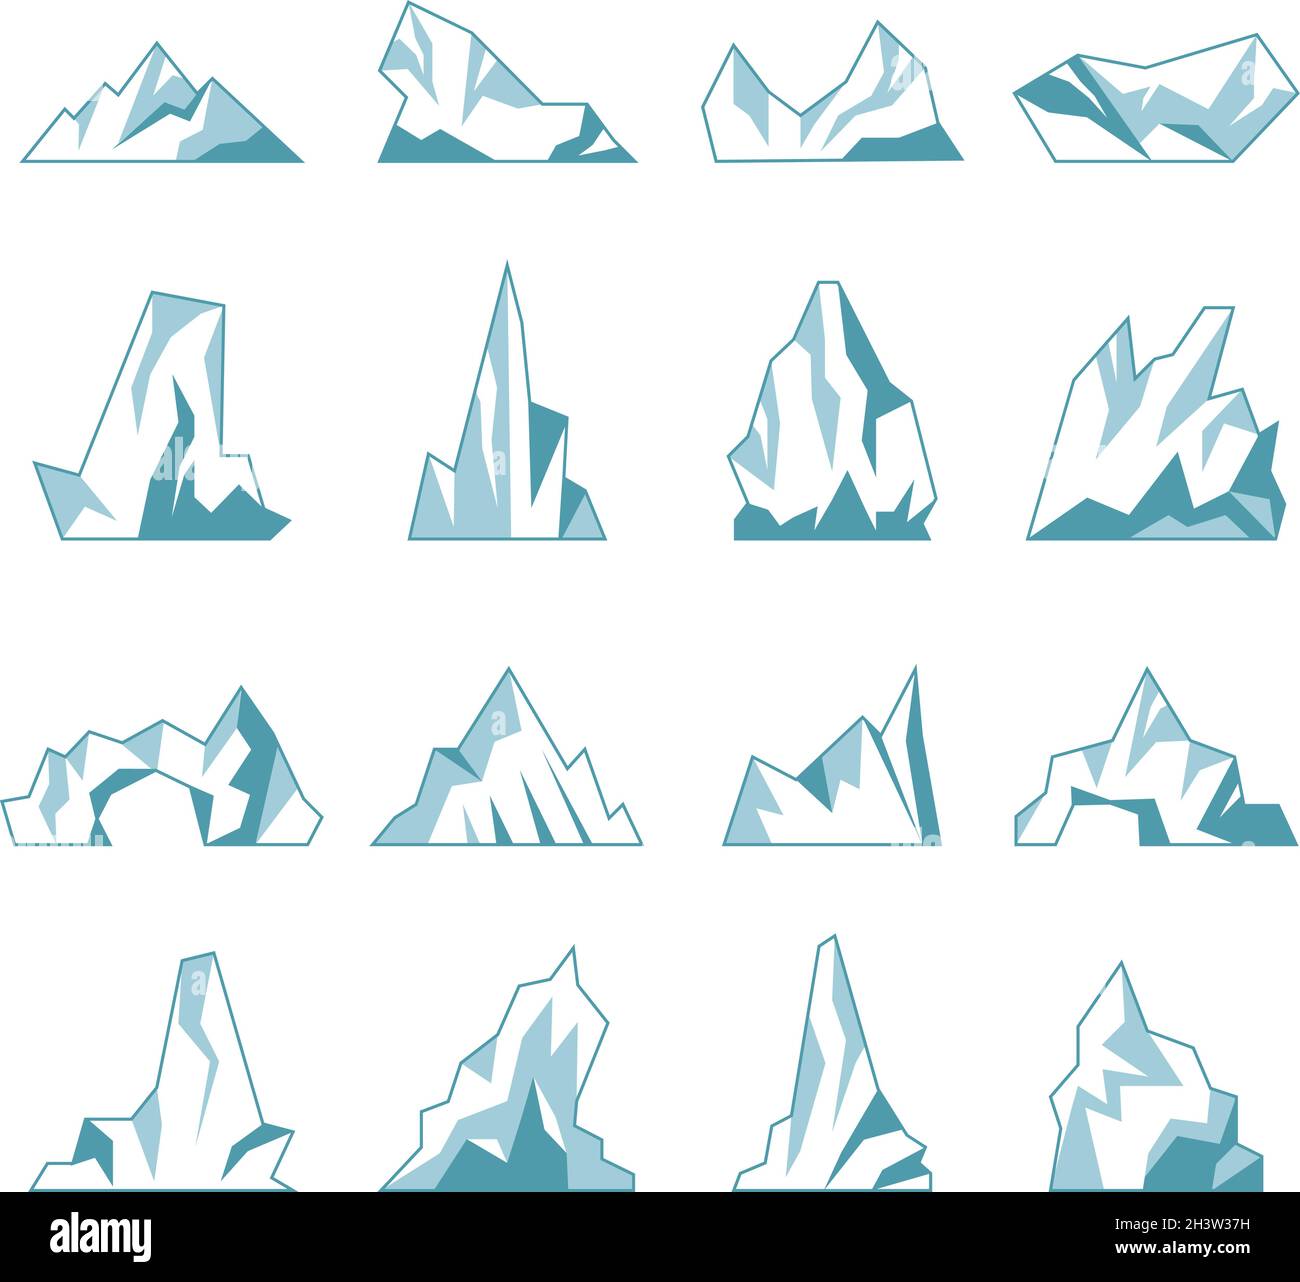 Eisberg. North Pole Hills Winter Berge im Ozean eiskalten Eis Felsen Schnee jüngsten Vektor-Sammlung Stock Vektor